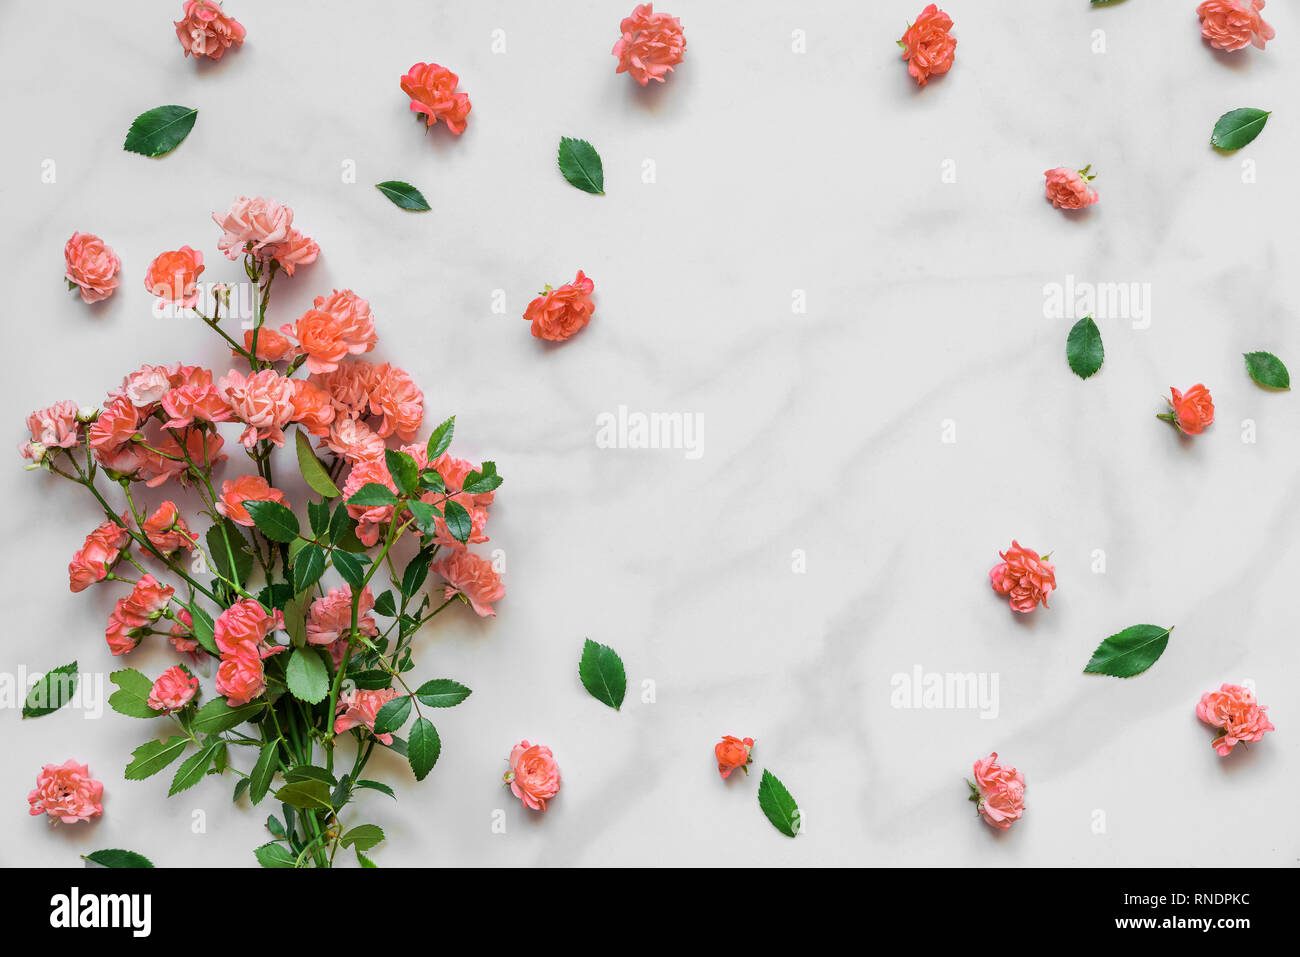 Lebende Koralle Farbe Rosen Blumenstrauß mit Rahmen aus Knospen auf weißem Hintergrund. Pantone-Farbe des Jahres 2019. Natur Konzept. Flach. Stockfoto